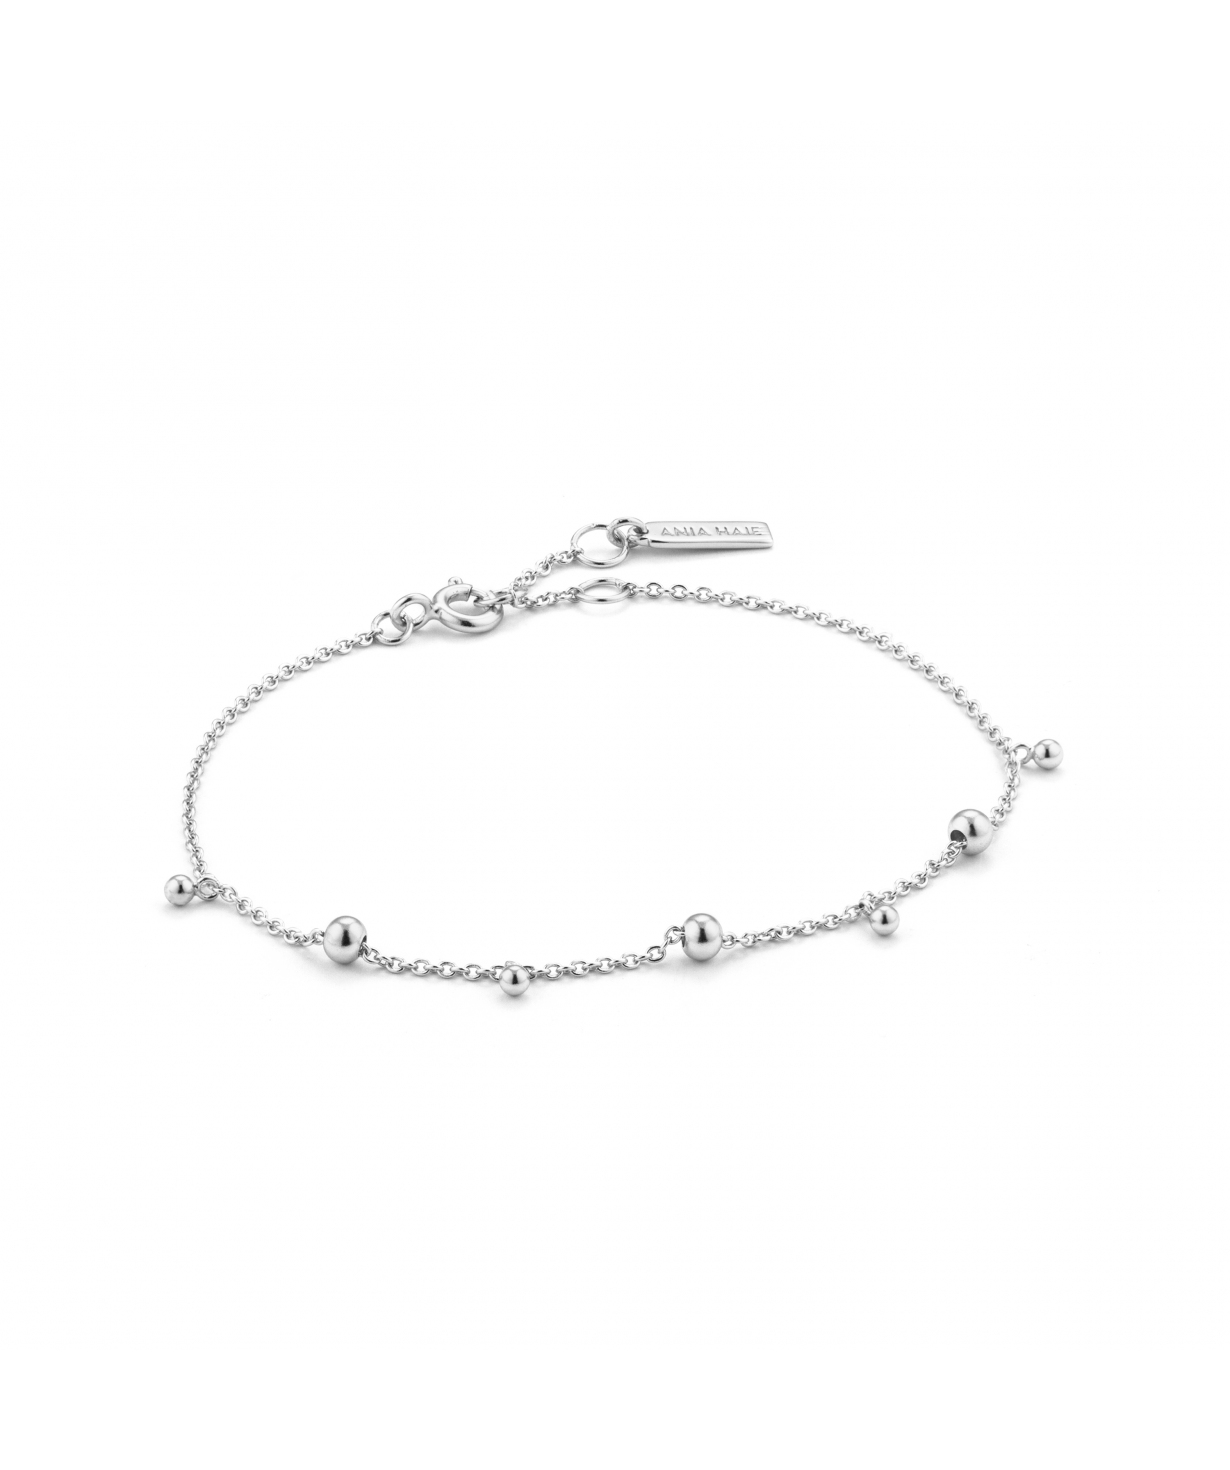 Bracelet   `Ania Haie`   B002-03H